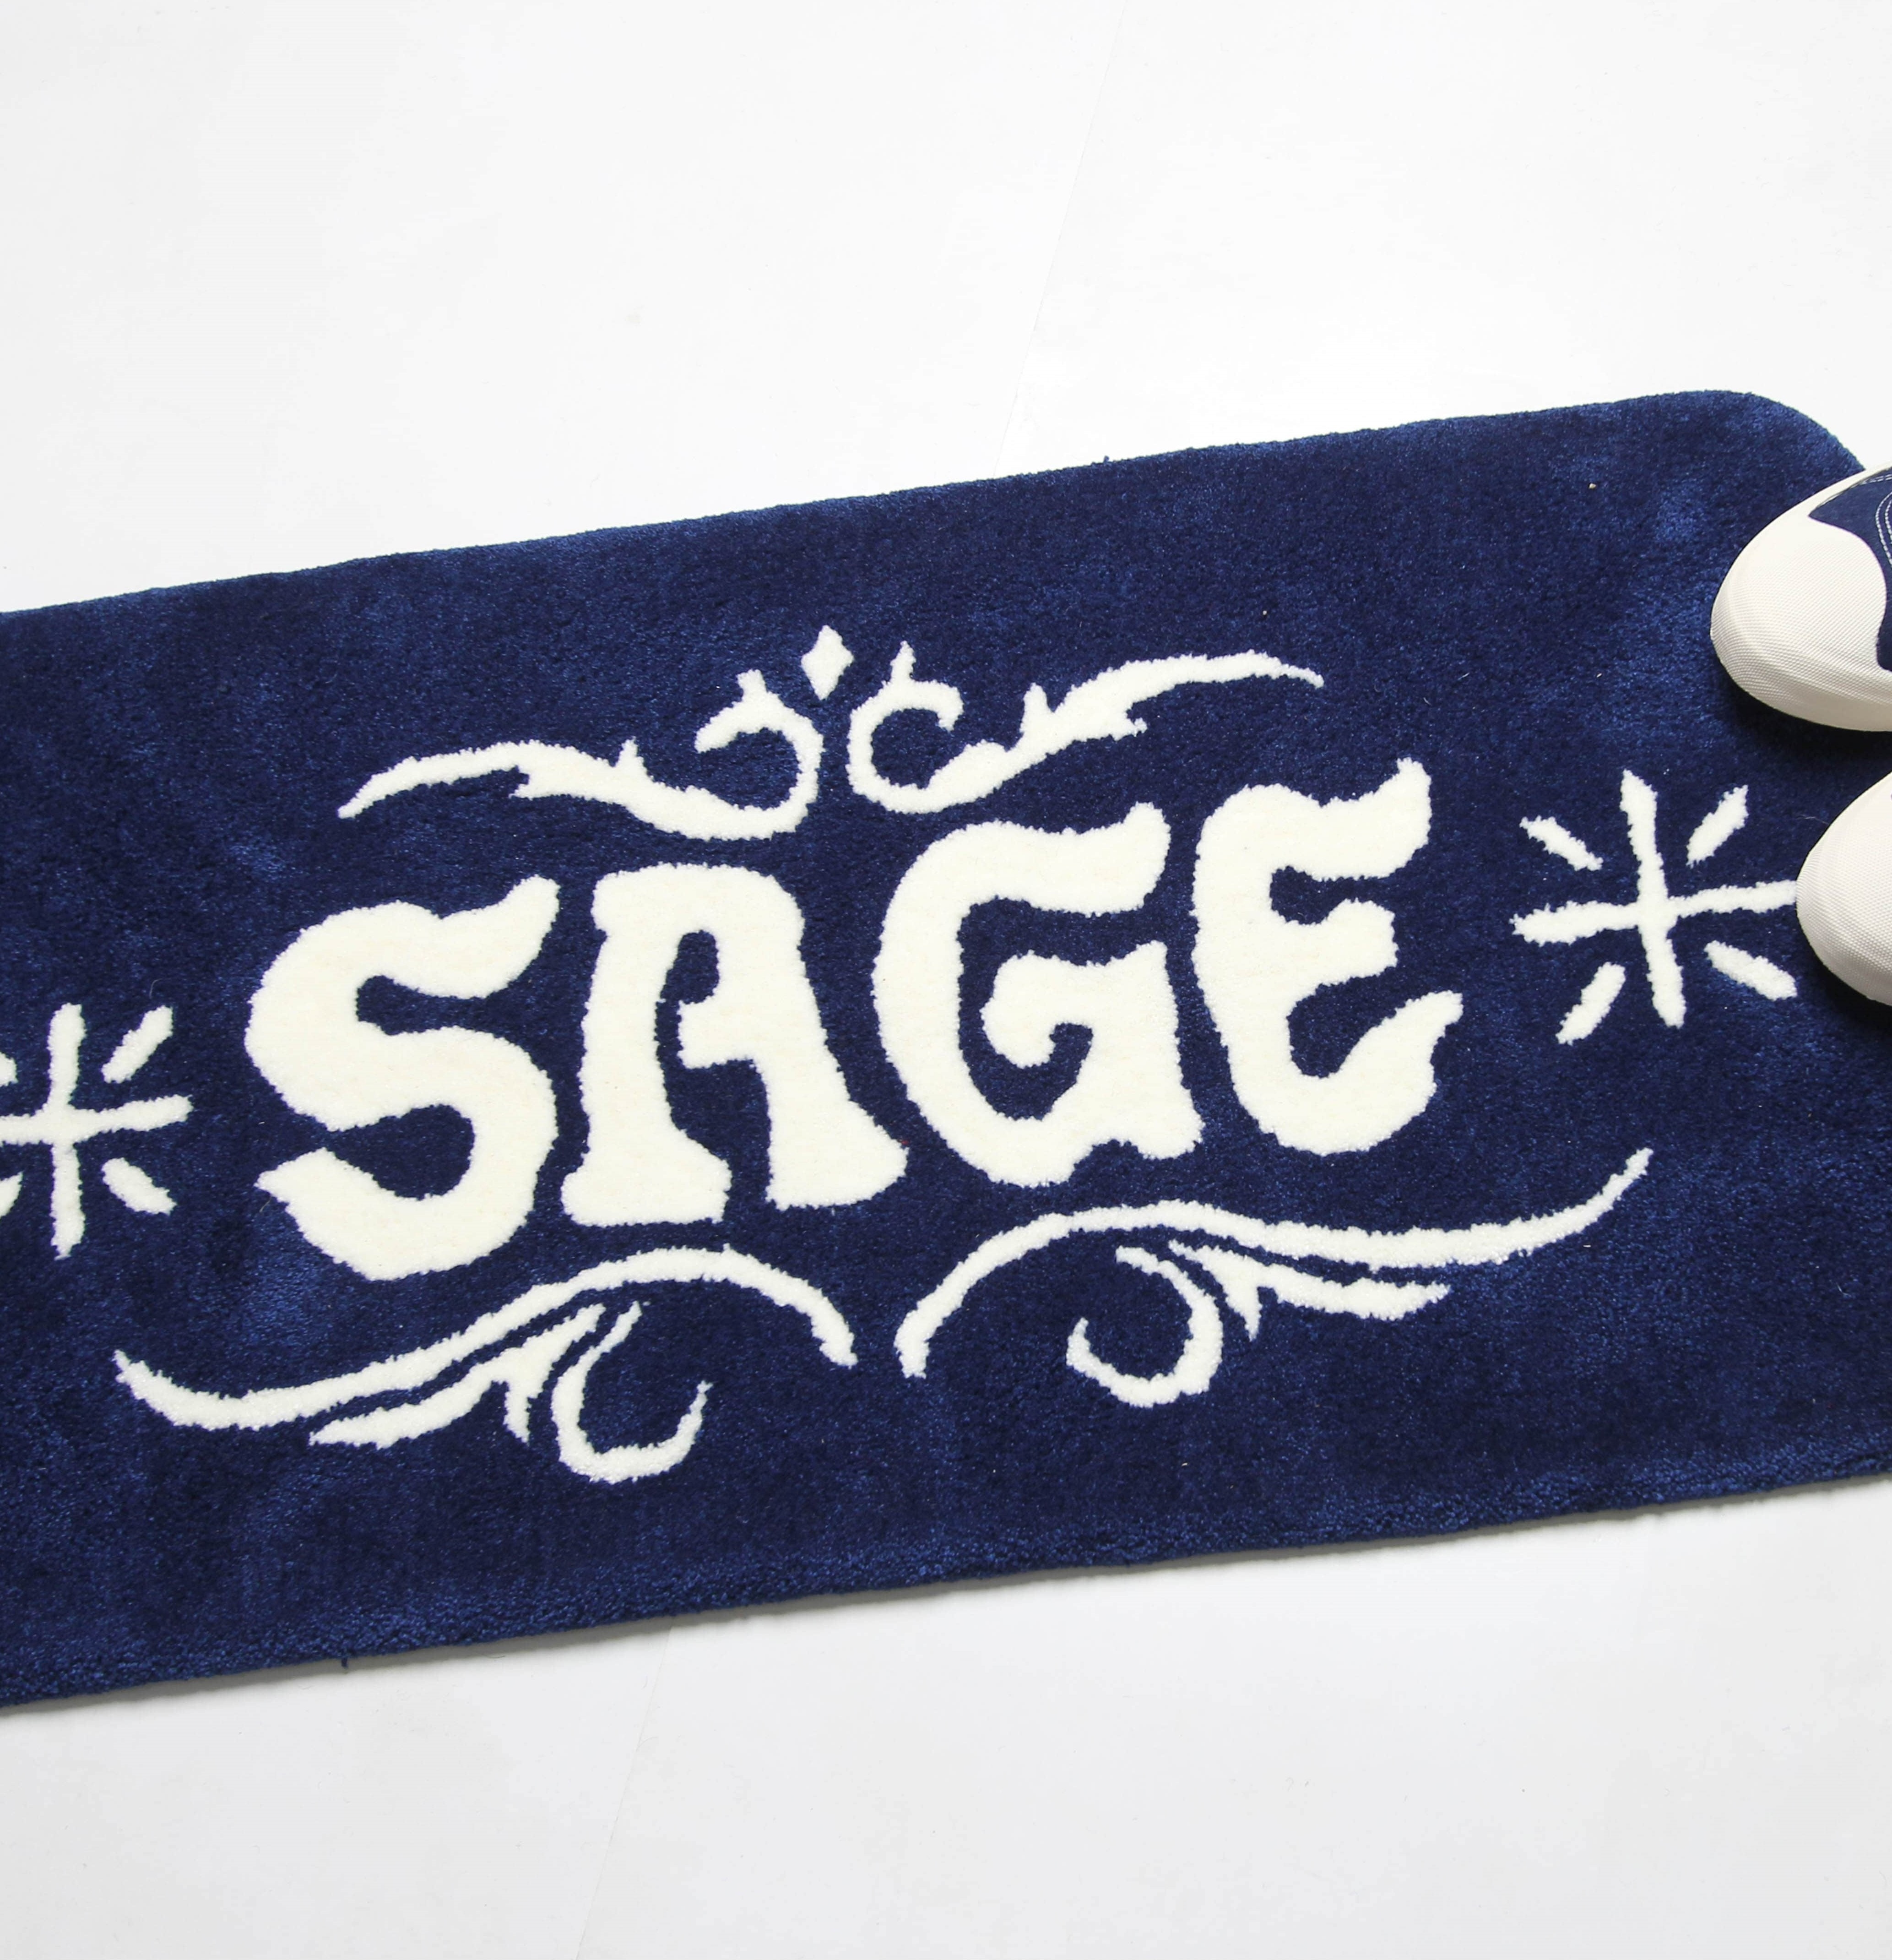 Sage Footwear | @sage_footwear